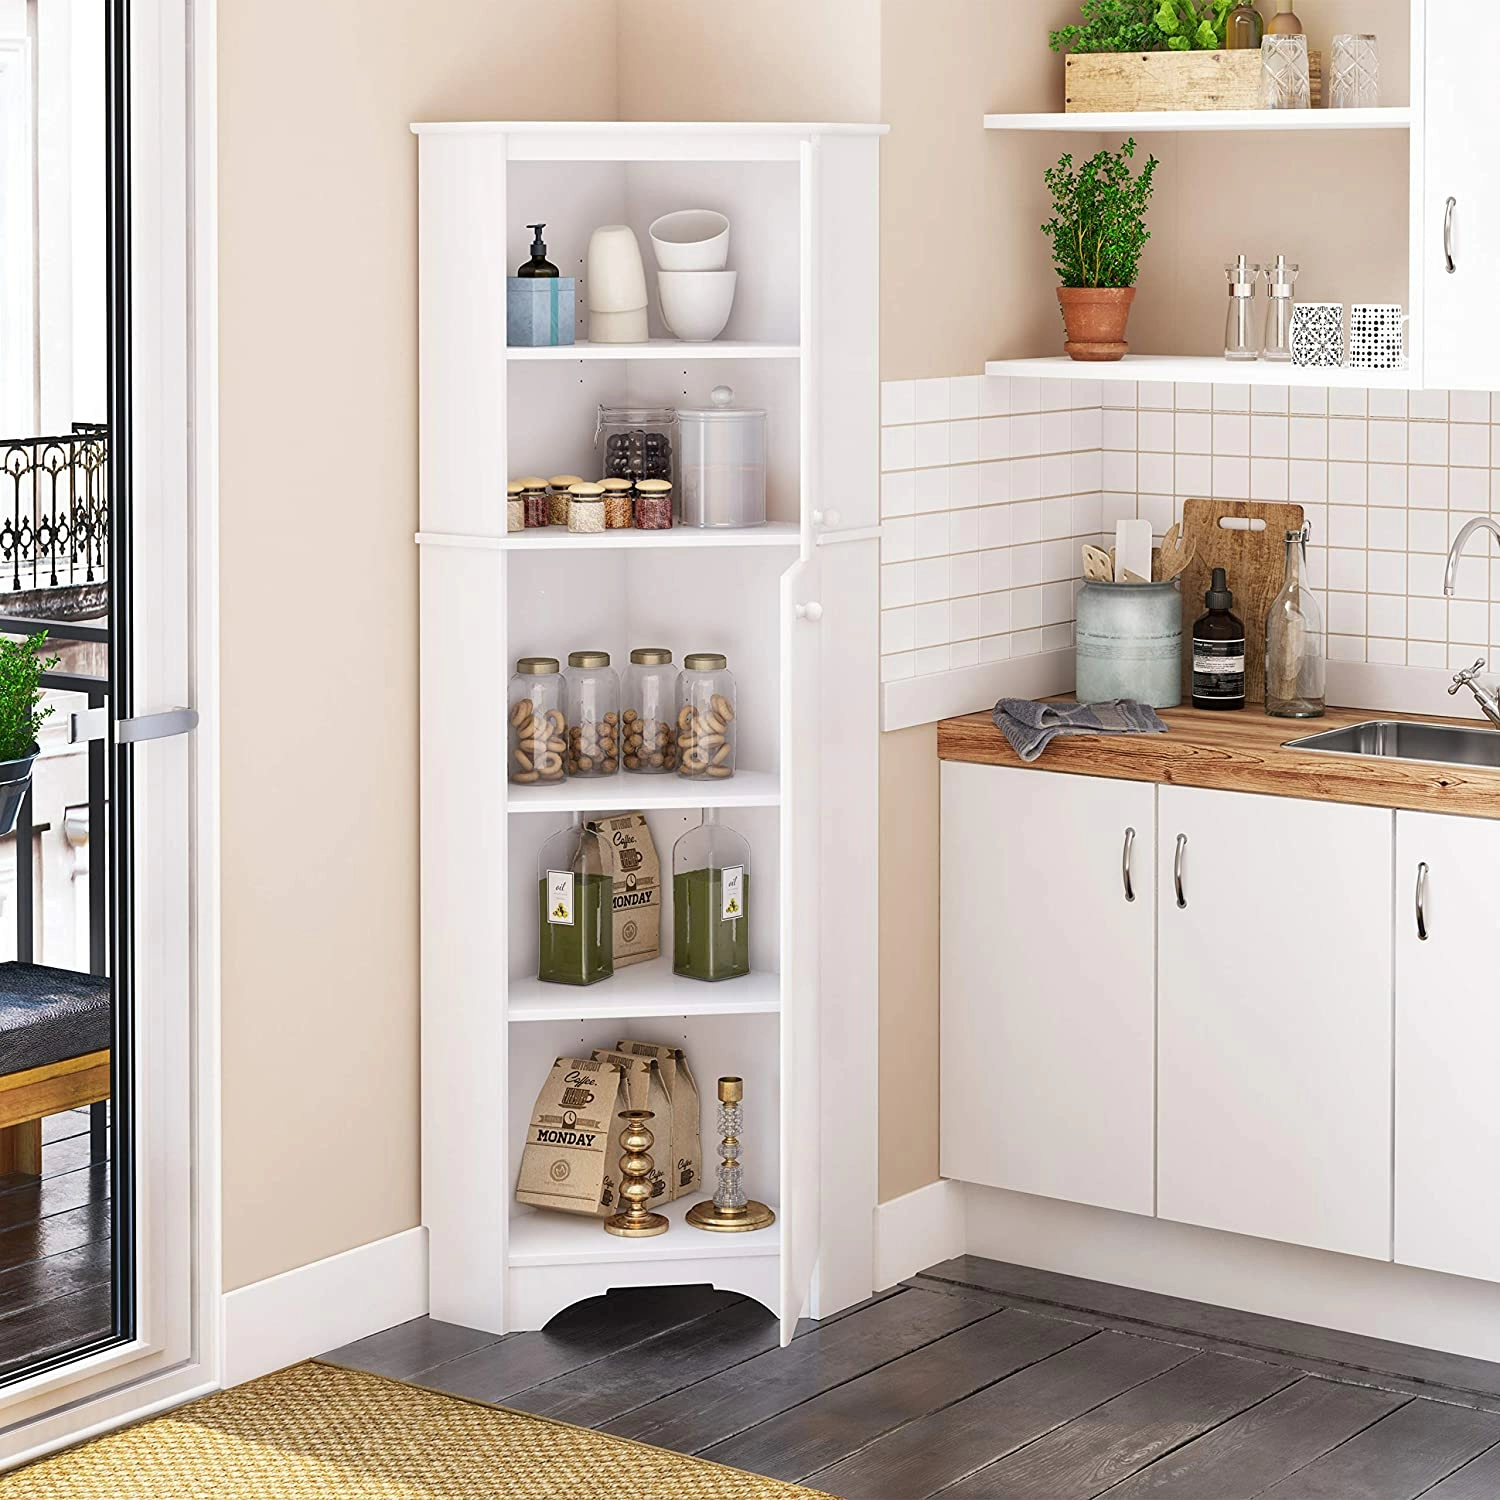 Fantastic Kitchen Corner Storage Ideas & Solutions 2020